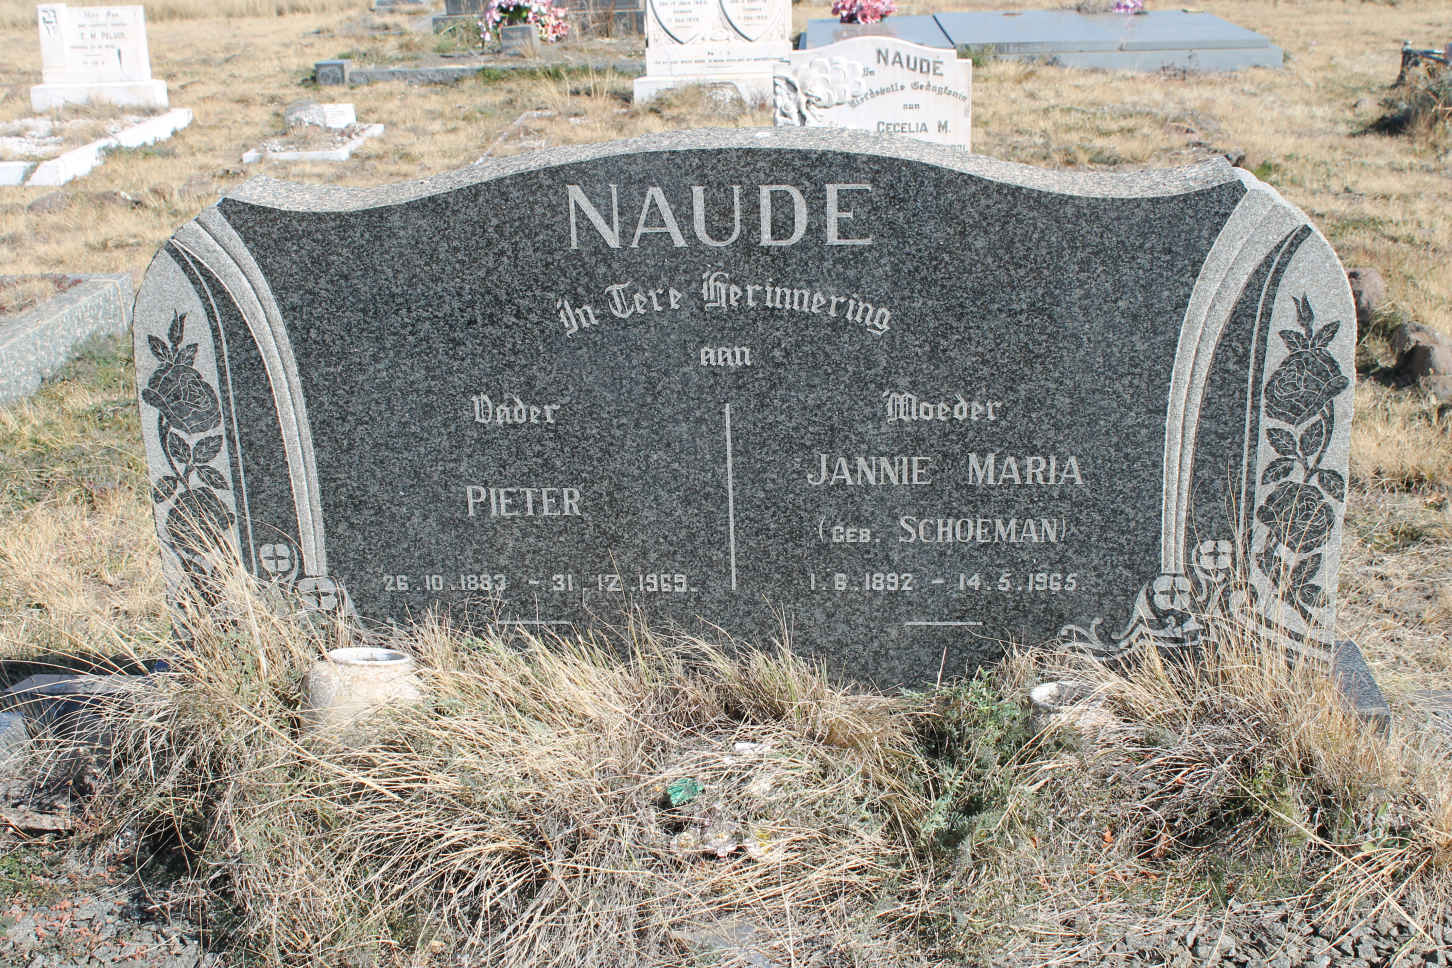 NAUDE Pieter 1883-1969 & Jannie Maria SCHOEMAN 1892-1965